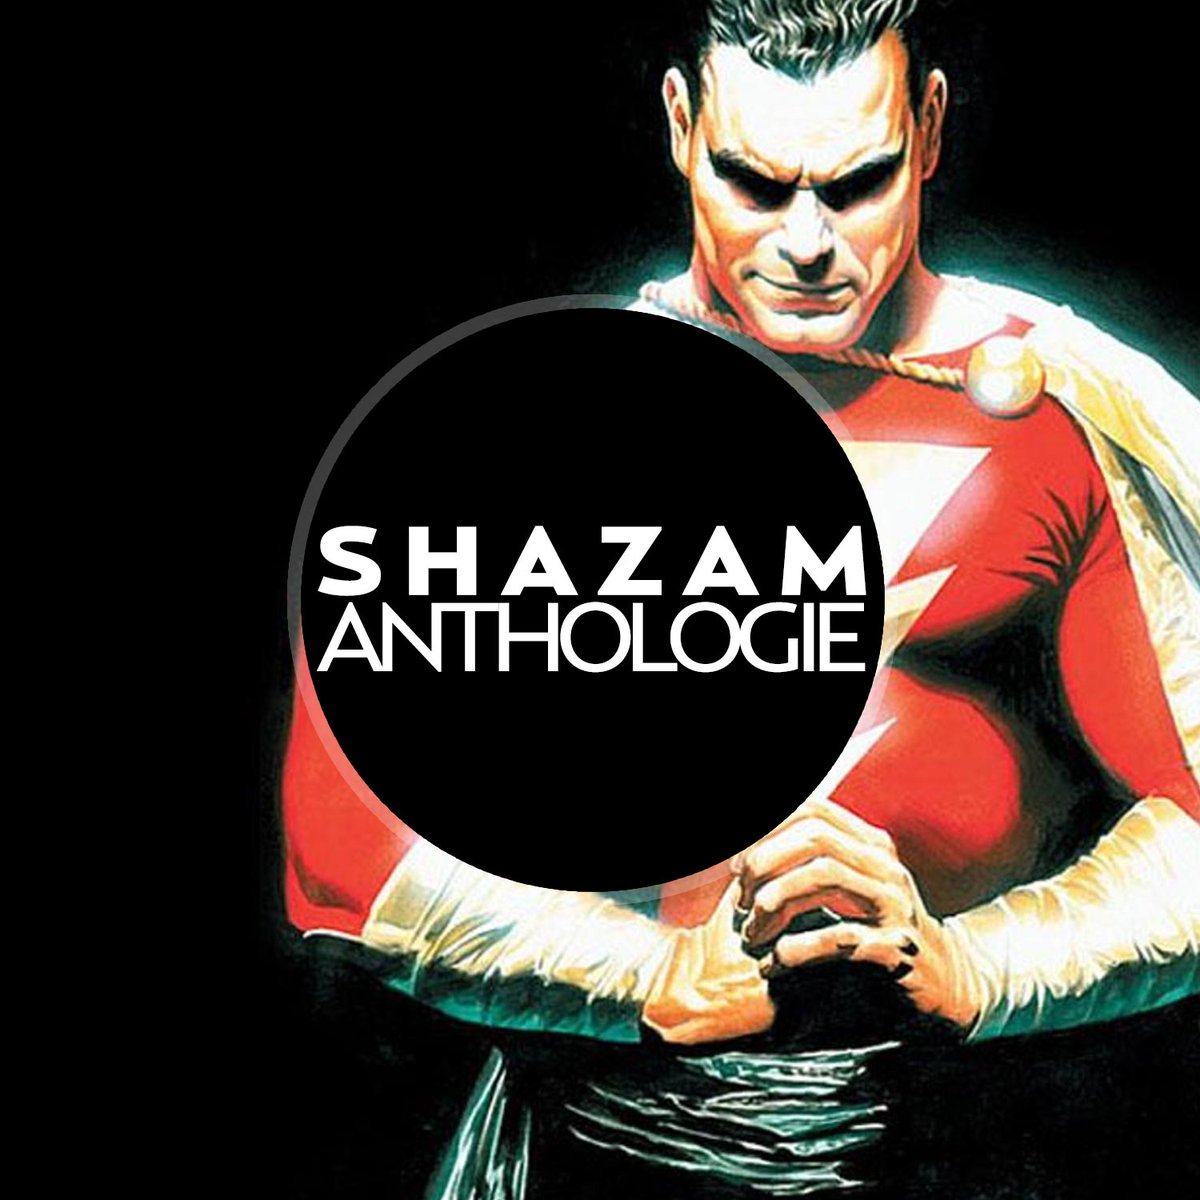 Shazam anthologie chez Urban Comics